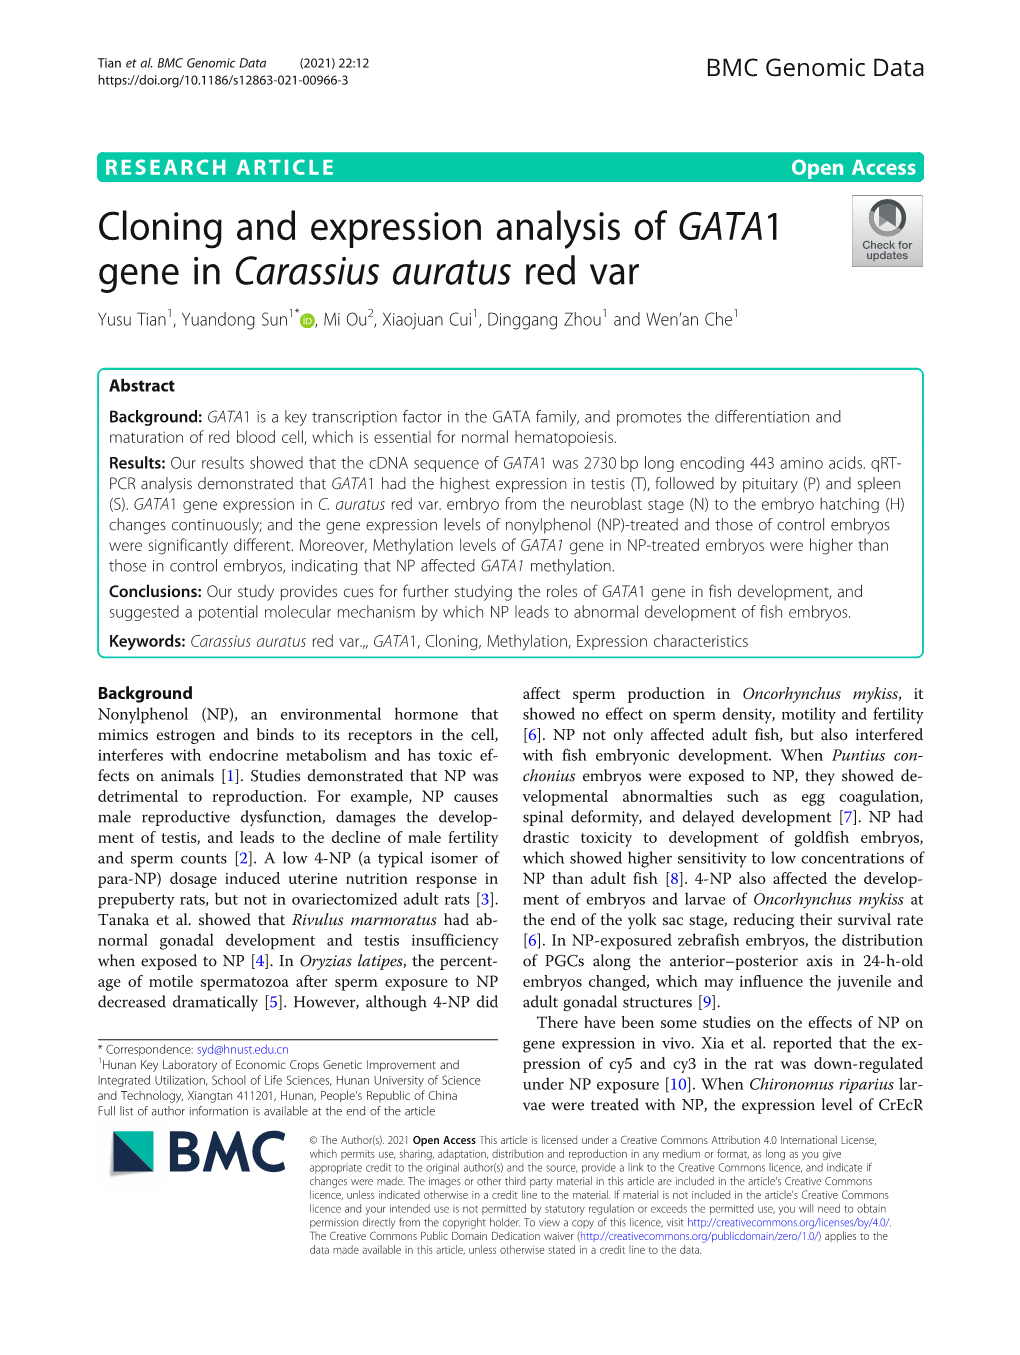 Cloning and Expression Analysis of GATA1 Gene in Carassius Auratus Red Var Yusu Tian1, Yuandong Sun1* ,Miou2, Xiaojuan Cui1, Dinggang Zhou1 and Wen’An Che1